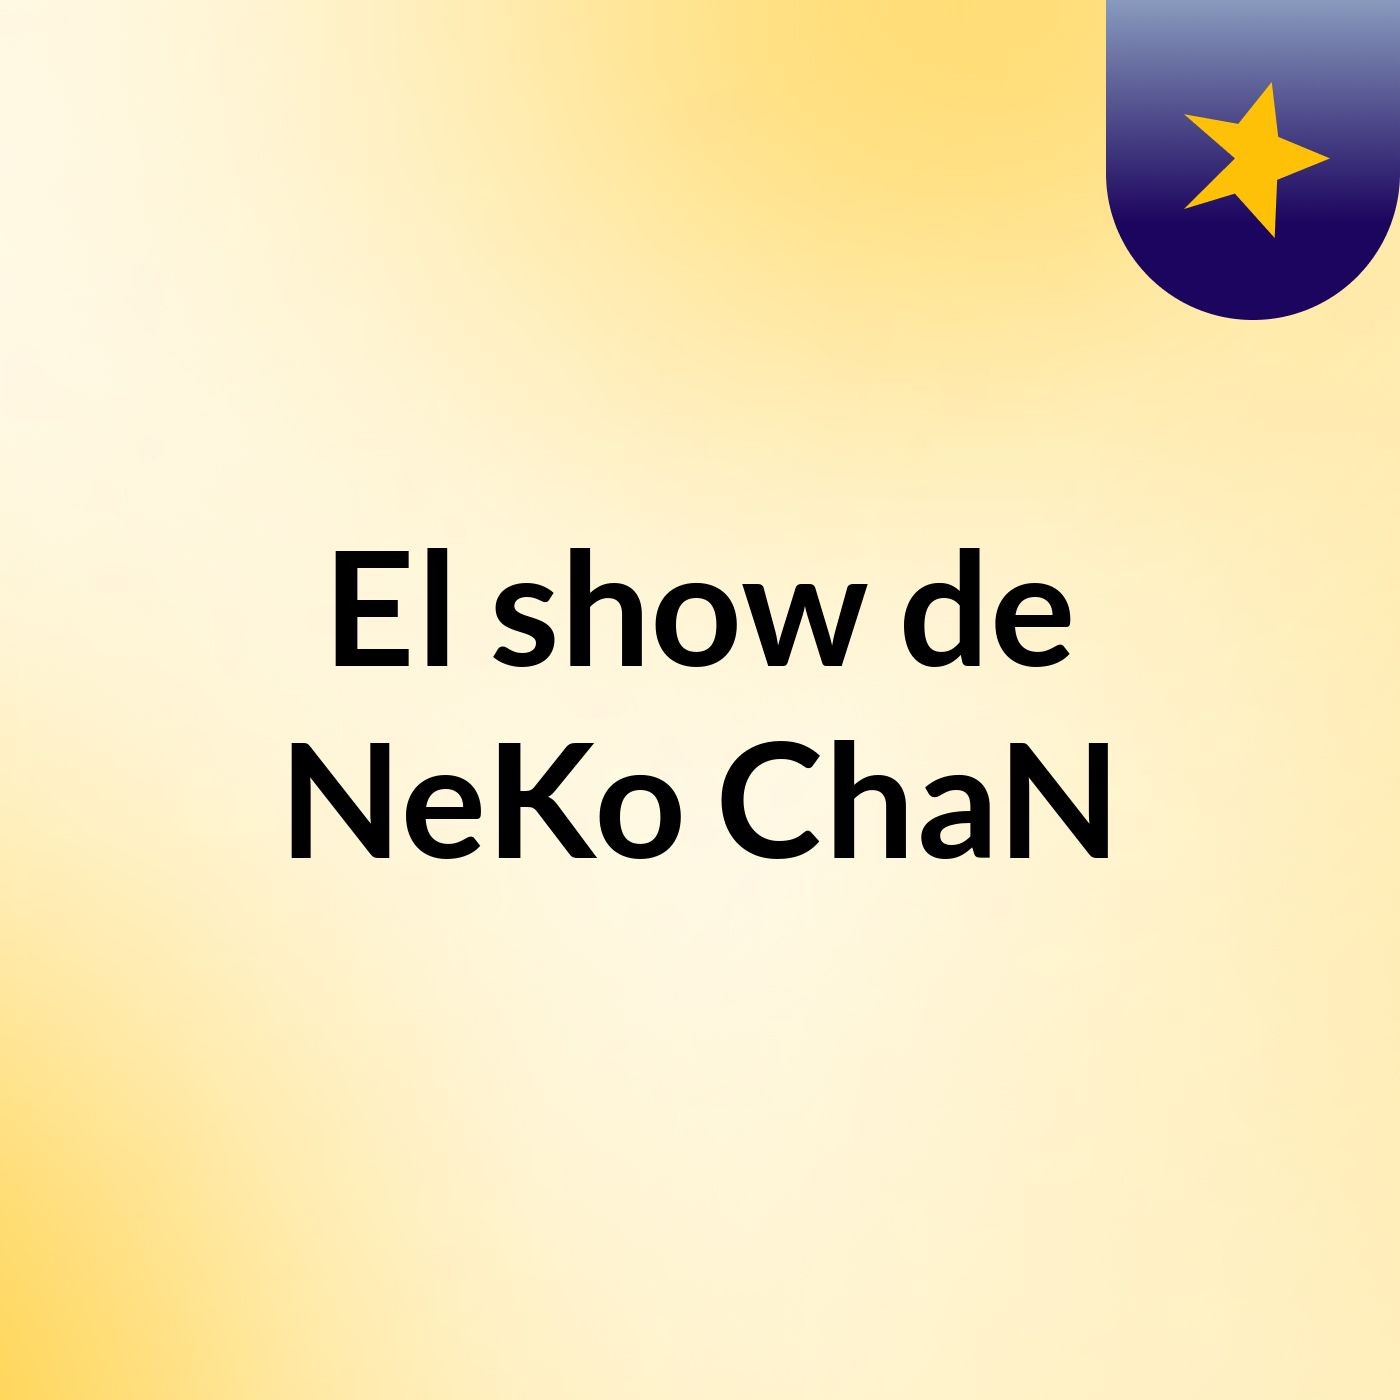 El show de NeKo ChaN